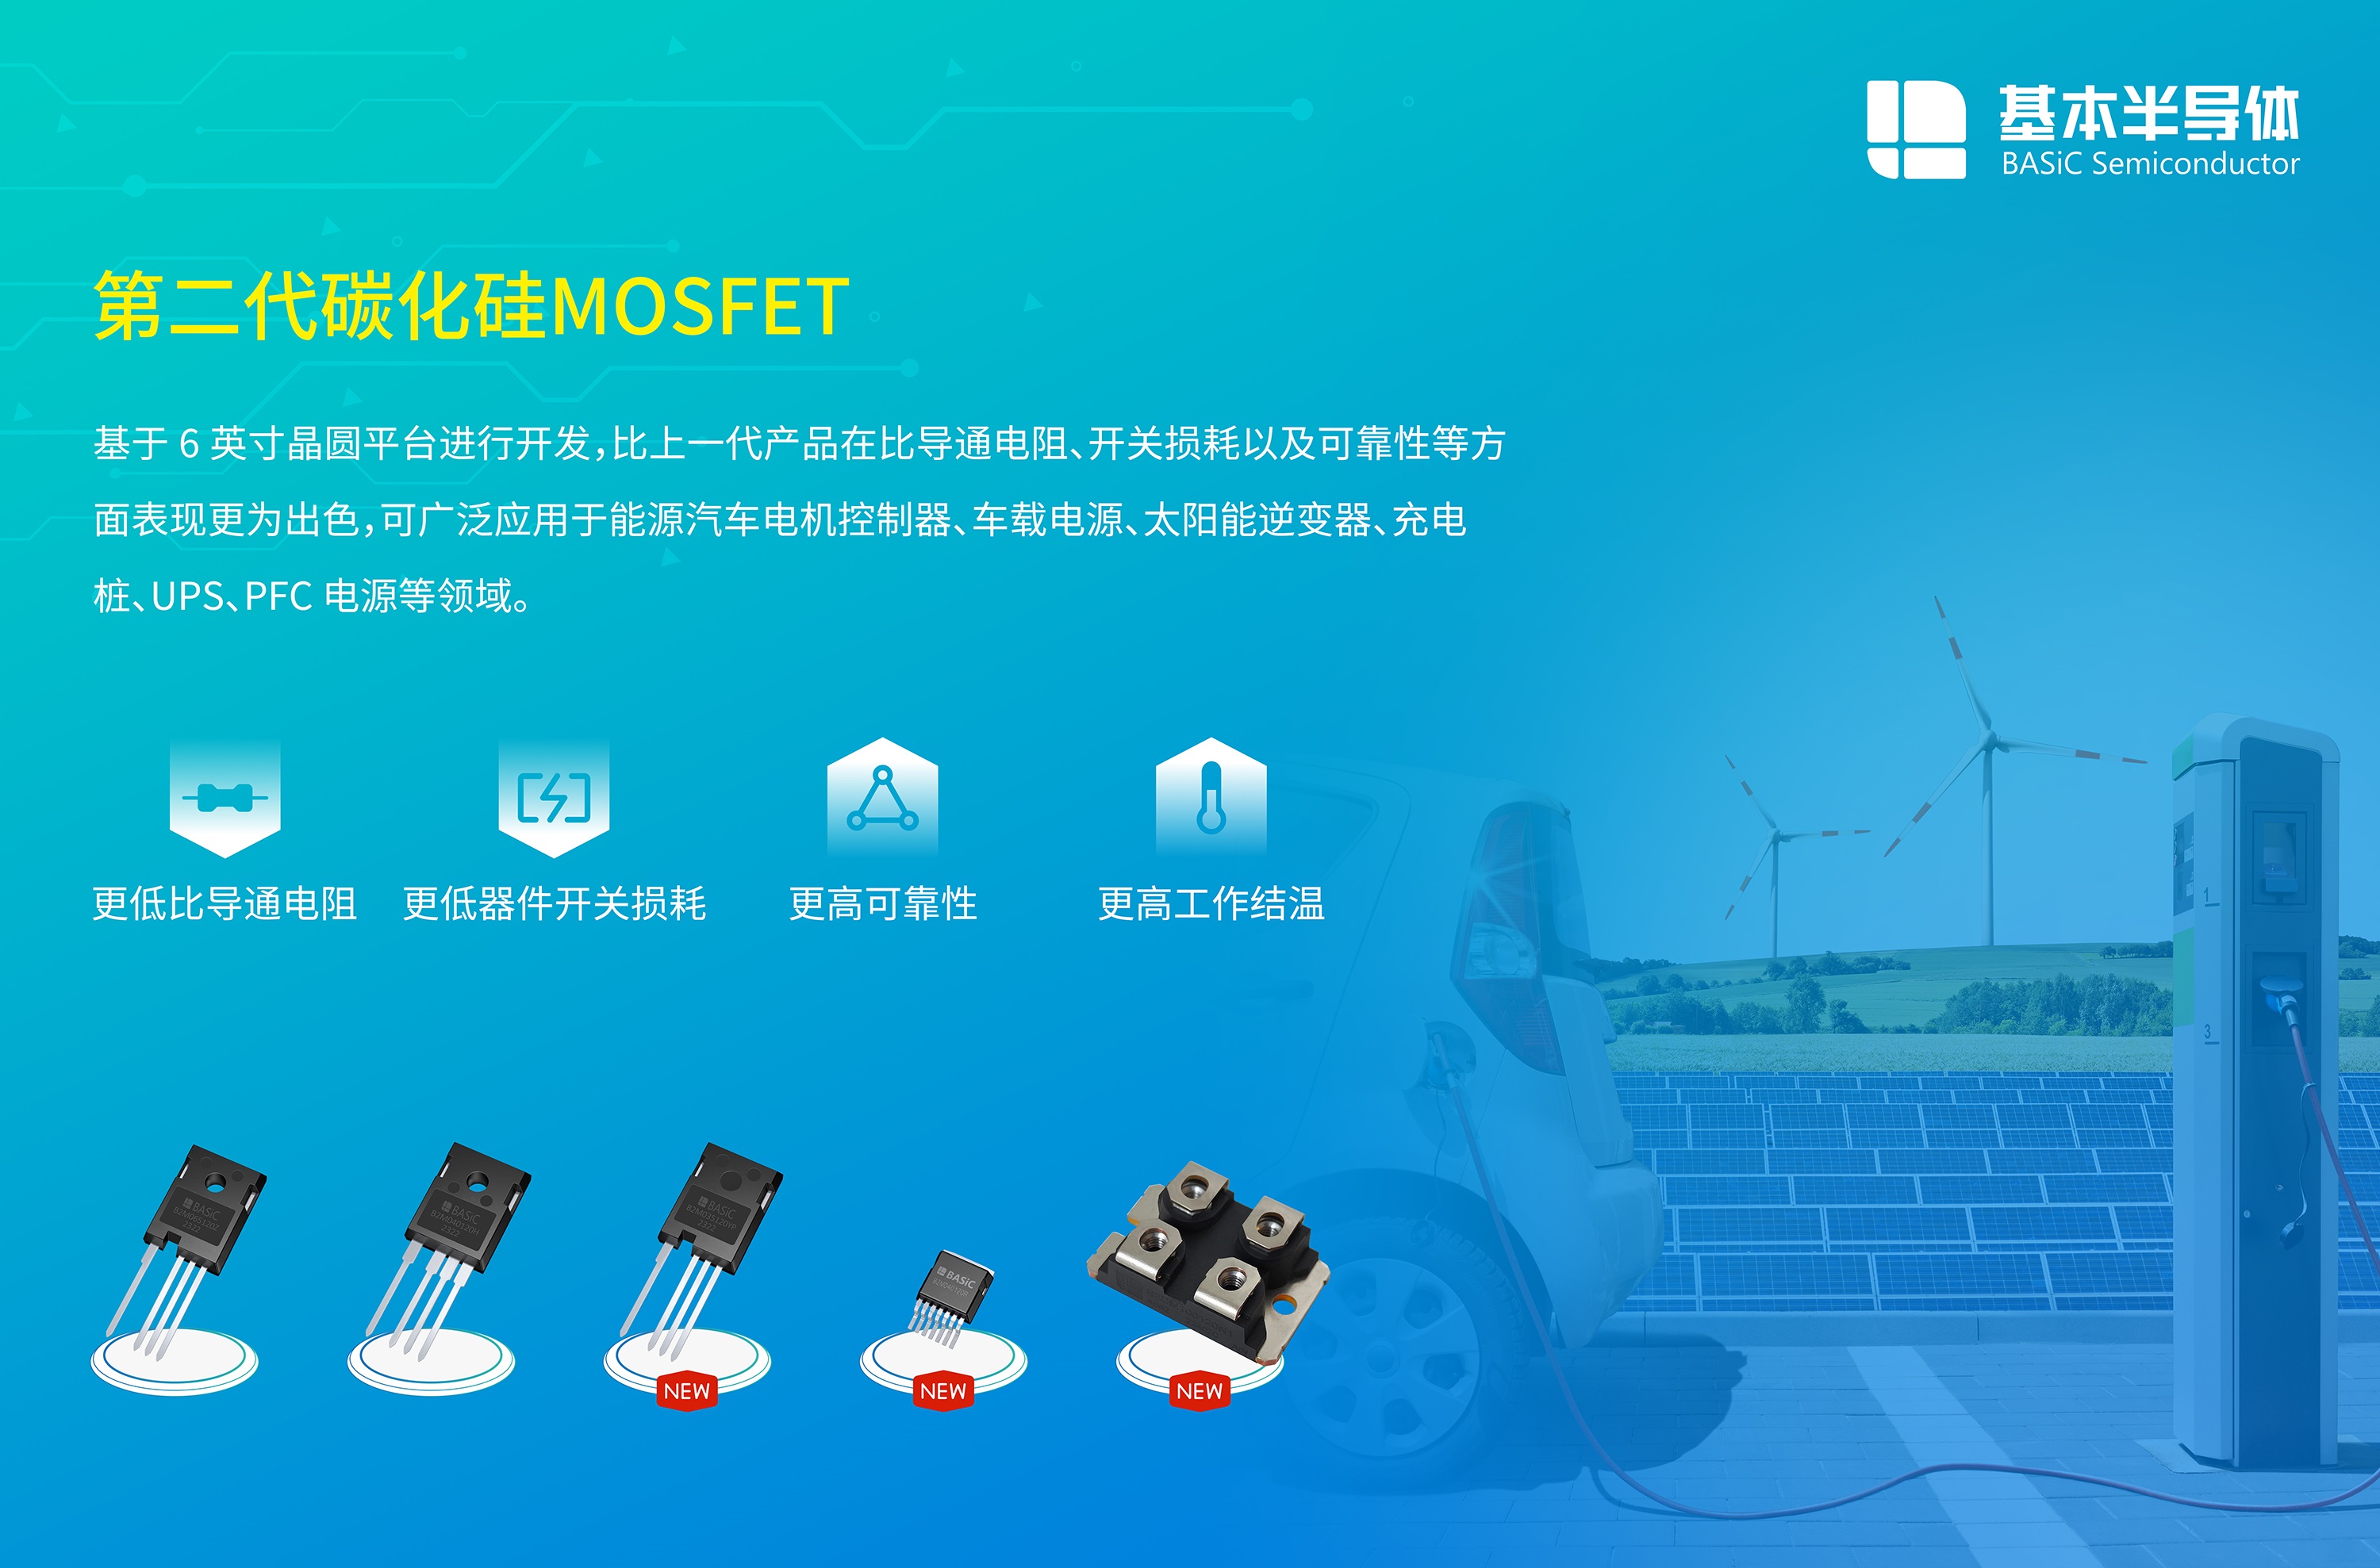 BASiC基本第二代SiC碳化硅MOSFET